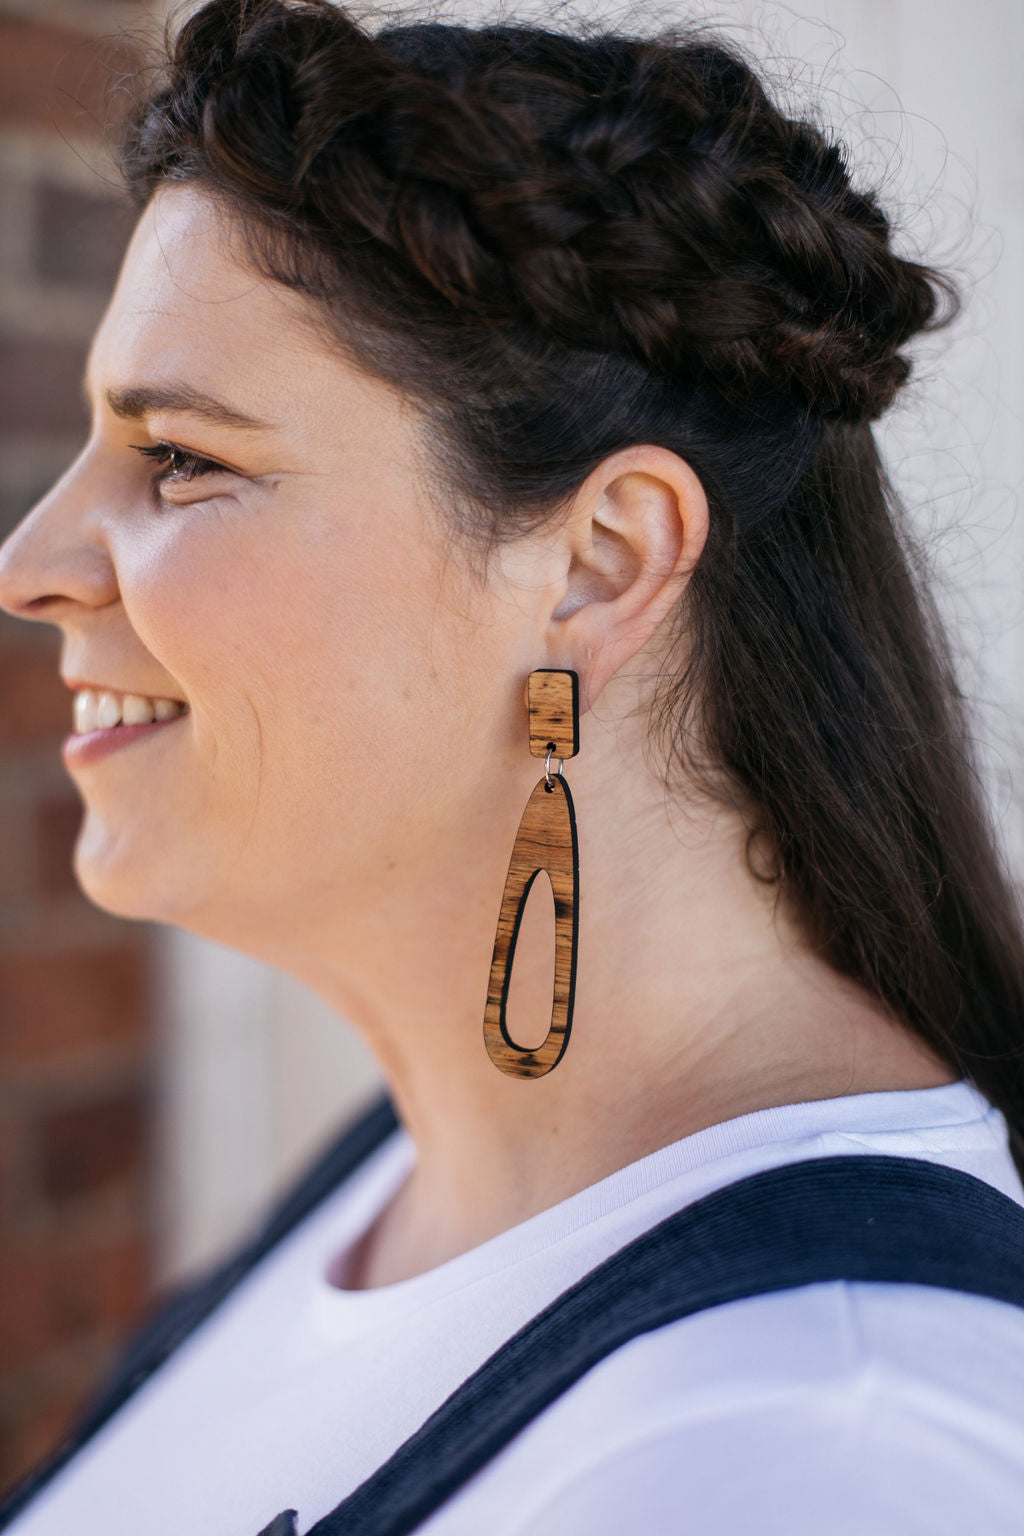 Tasmanian Oak Etched Earrings - Zero Waste Earrings The Spotted Quoll 